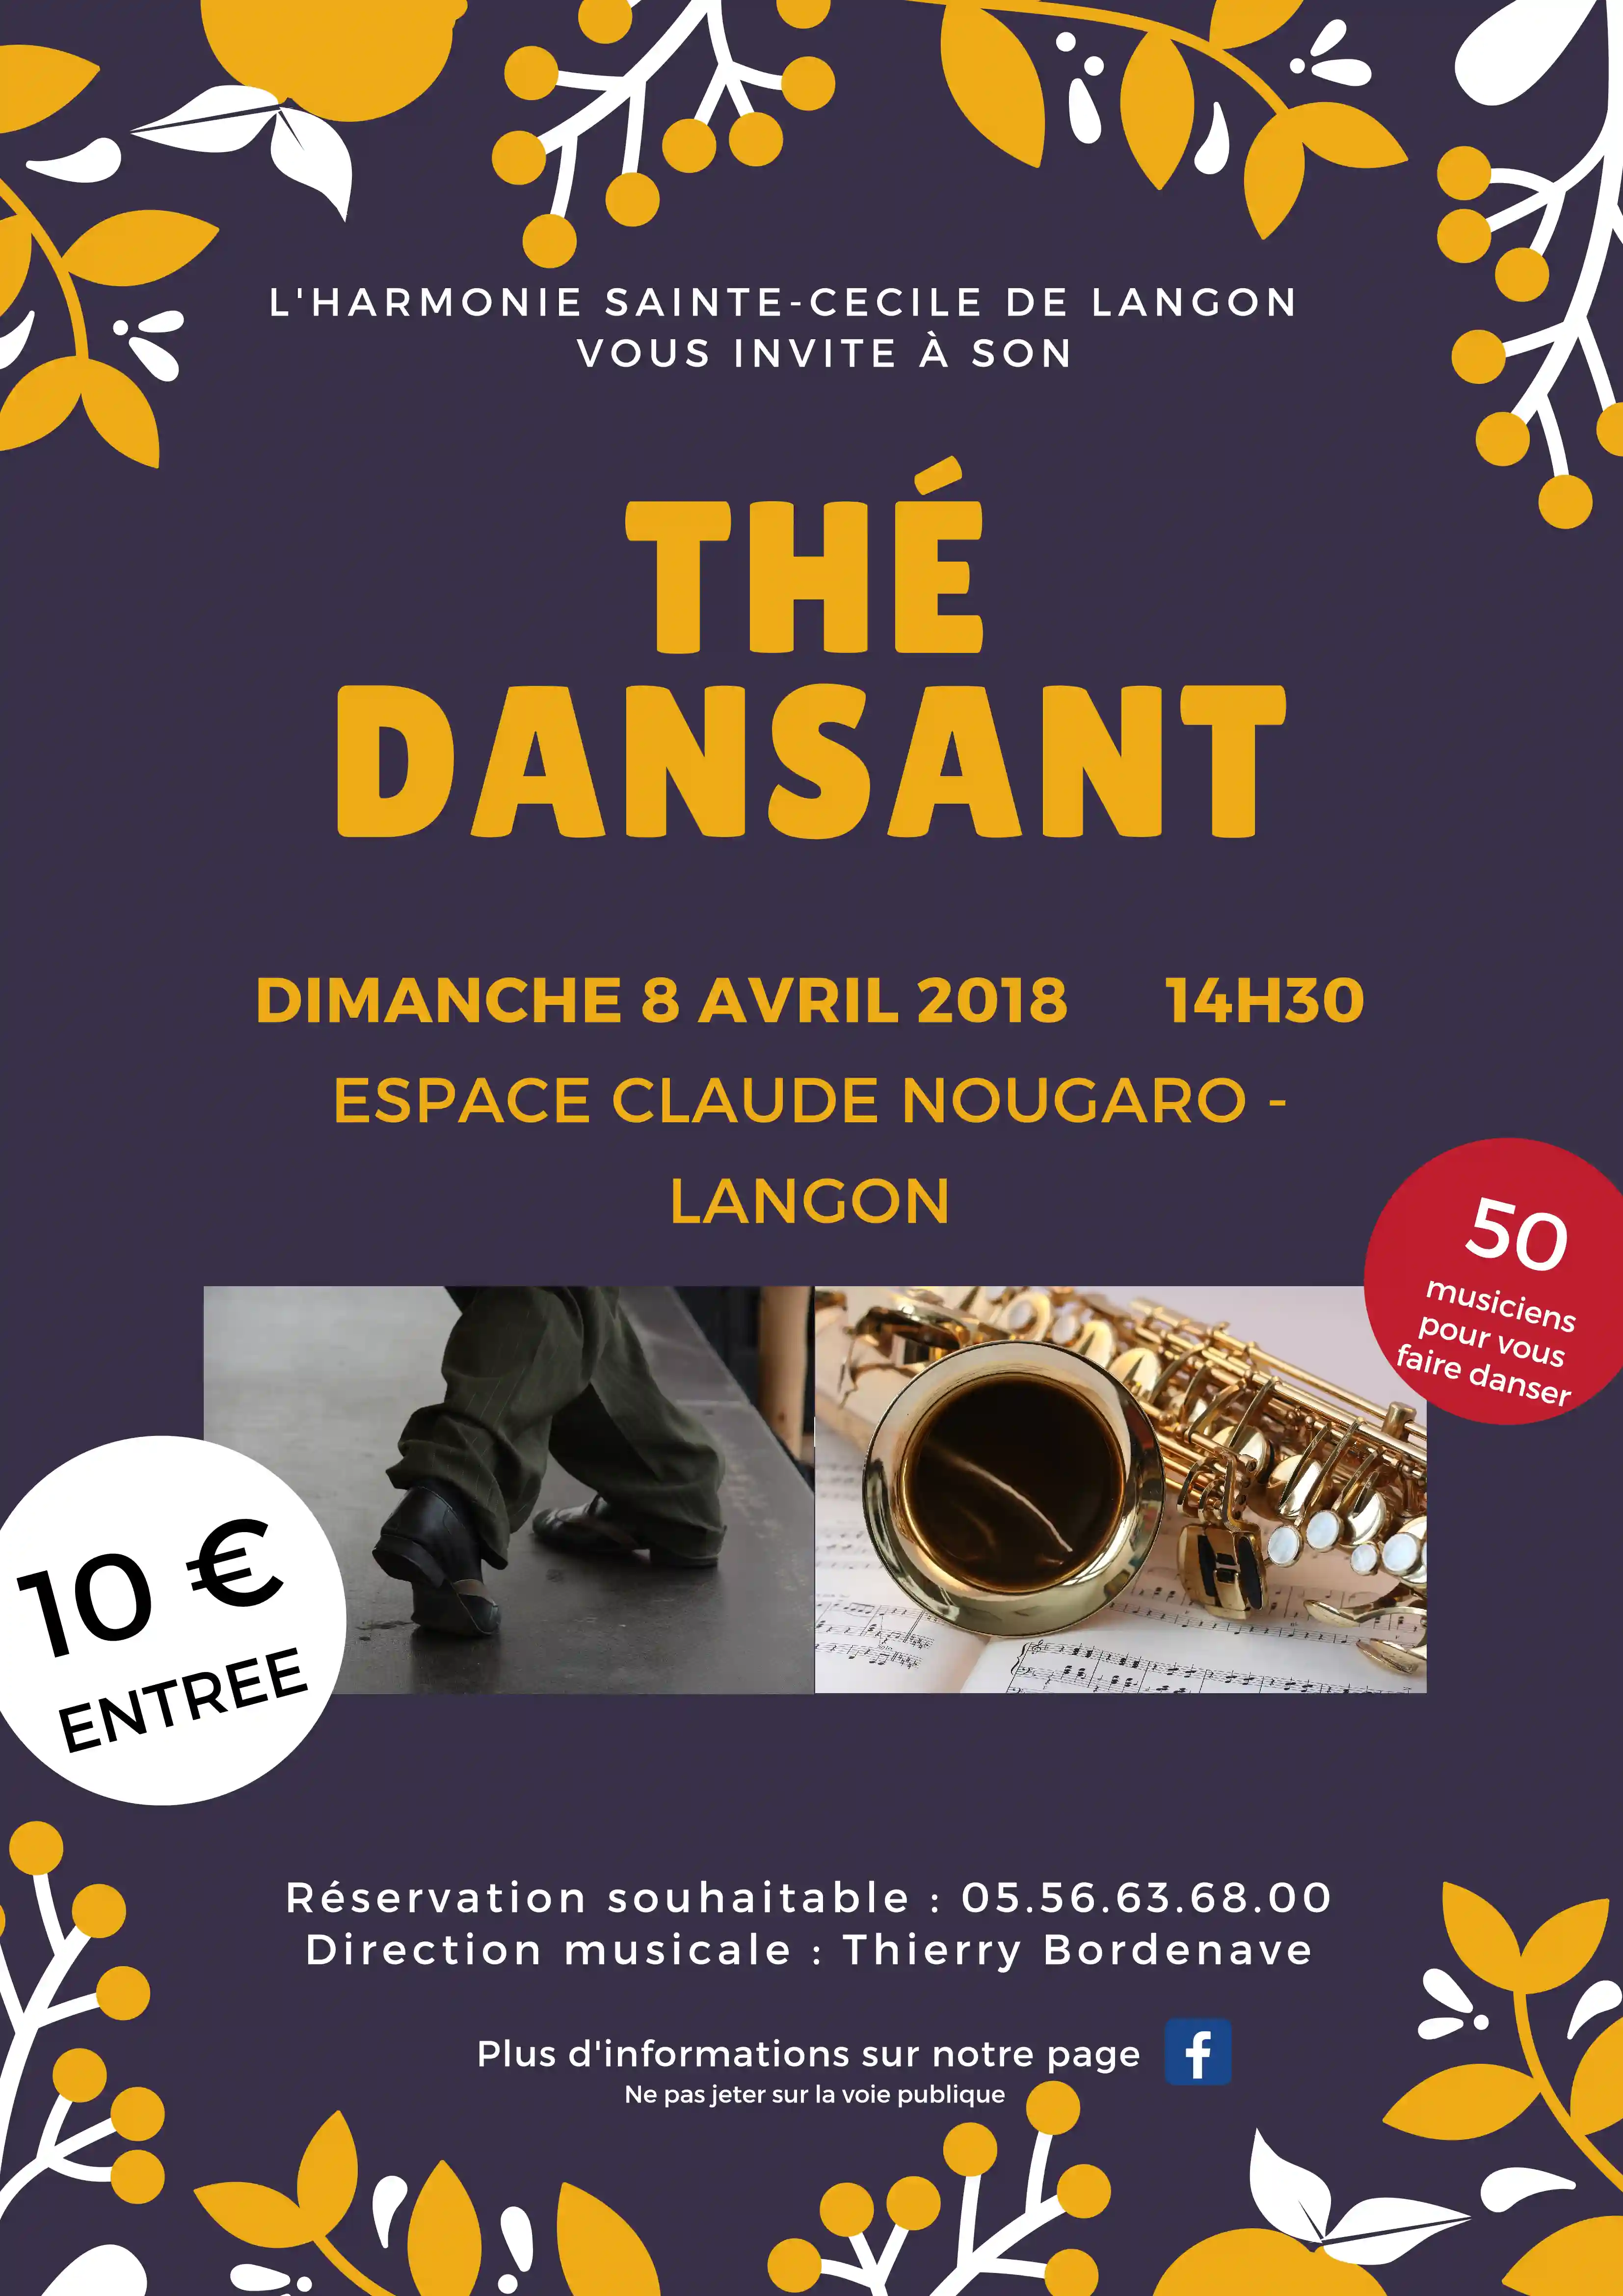 Flyer du thé dansant en avril 2018 à l'Espace Claude Nougaro de Langon.